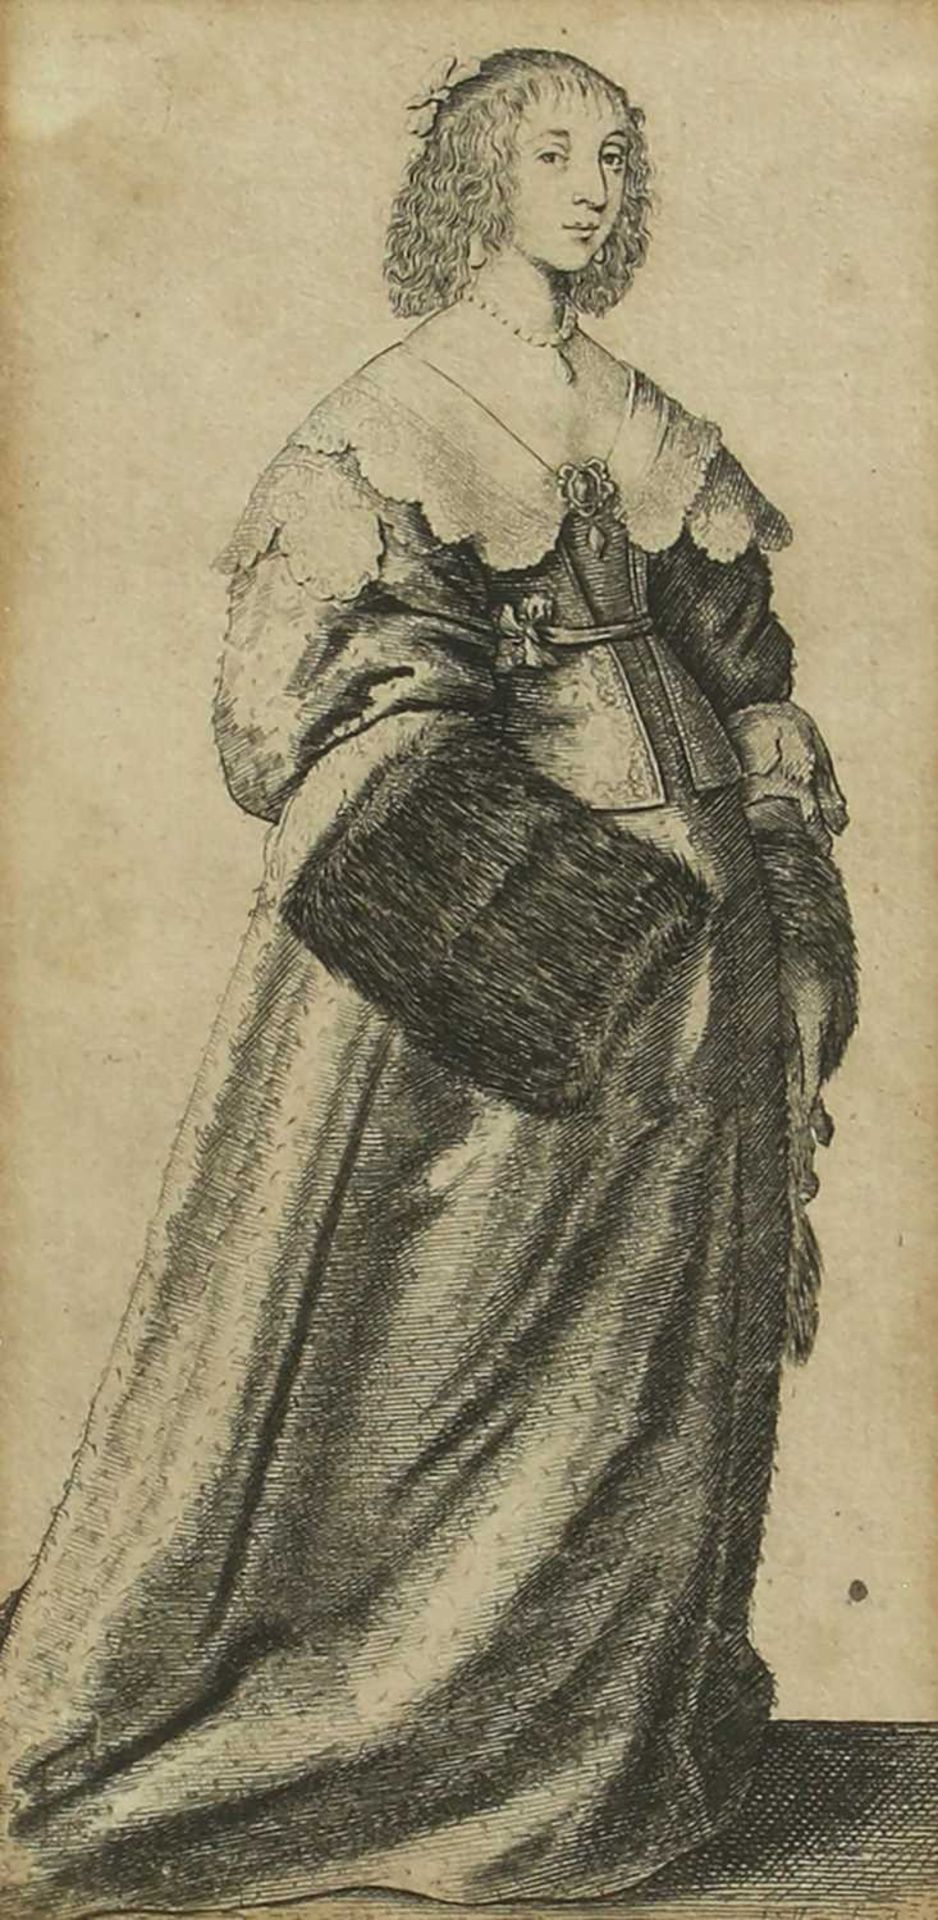 Wenceslaus Hollar (Bohemian, 1607-1677)